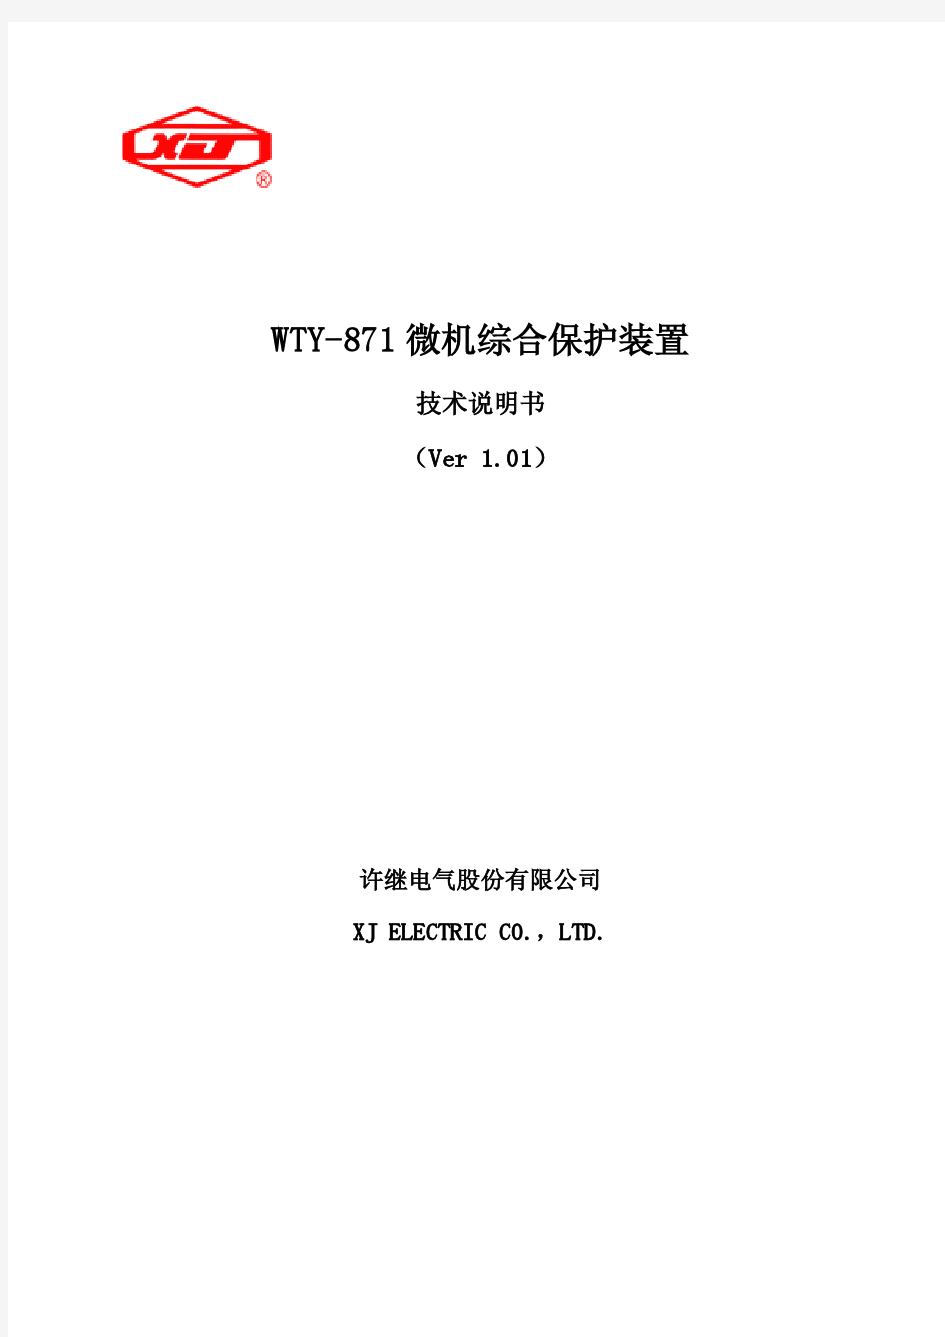 WTY-871技术及使用说明书 V1.01